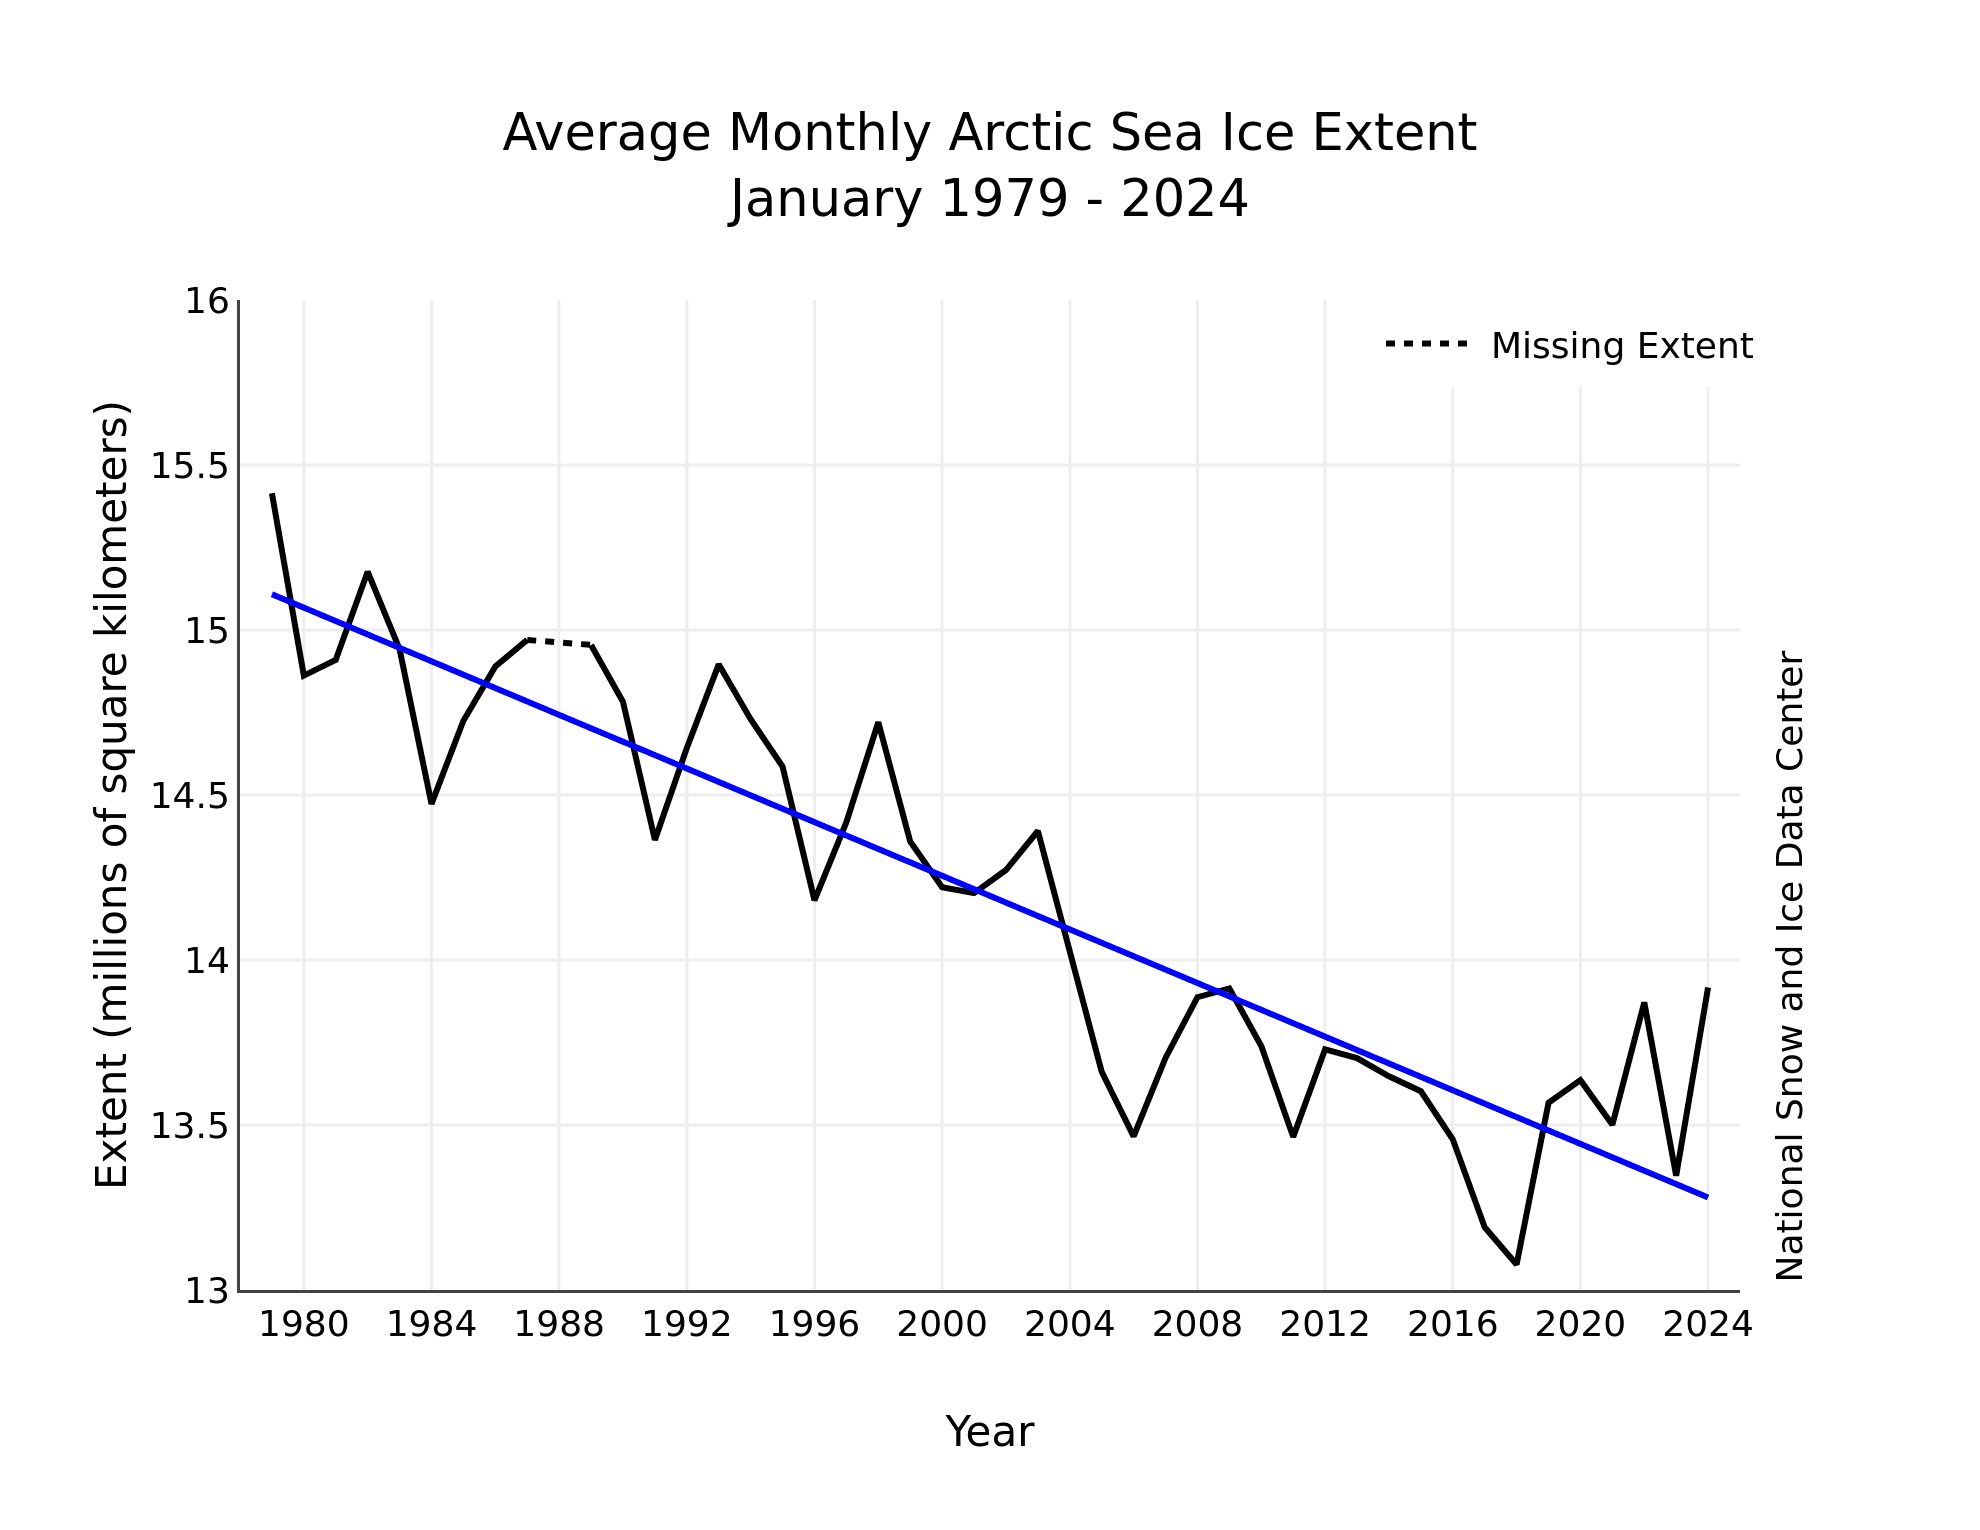 Średni zasięg lodu arktycznego w styczniu w latach 1979-2024. Od lat widać tendencję spadkową.